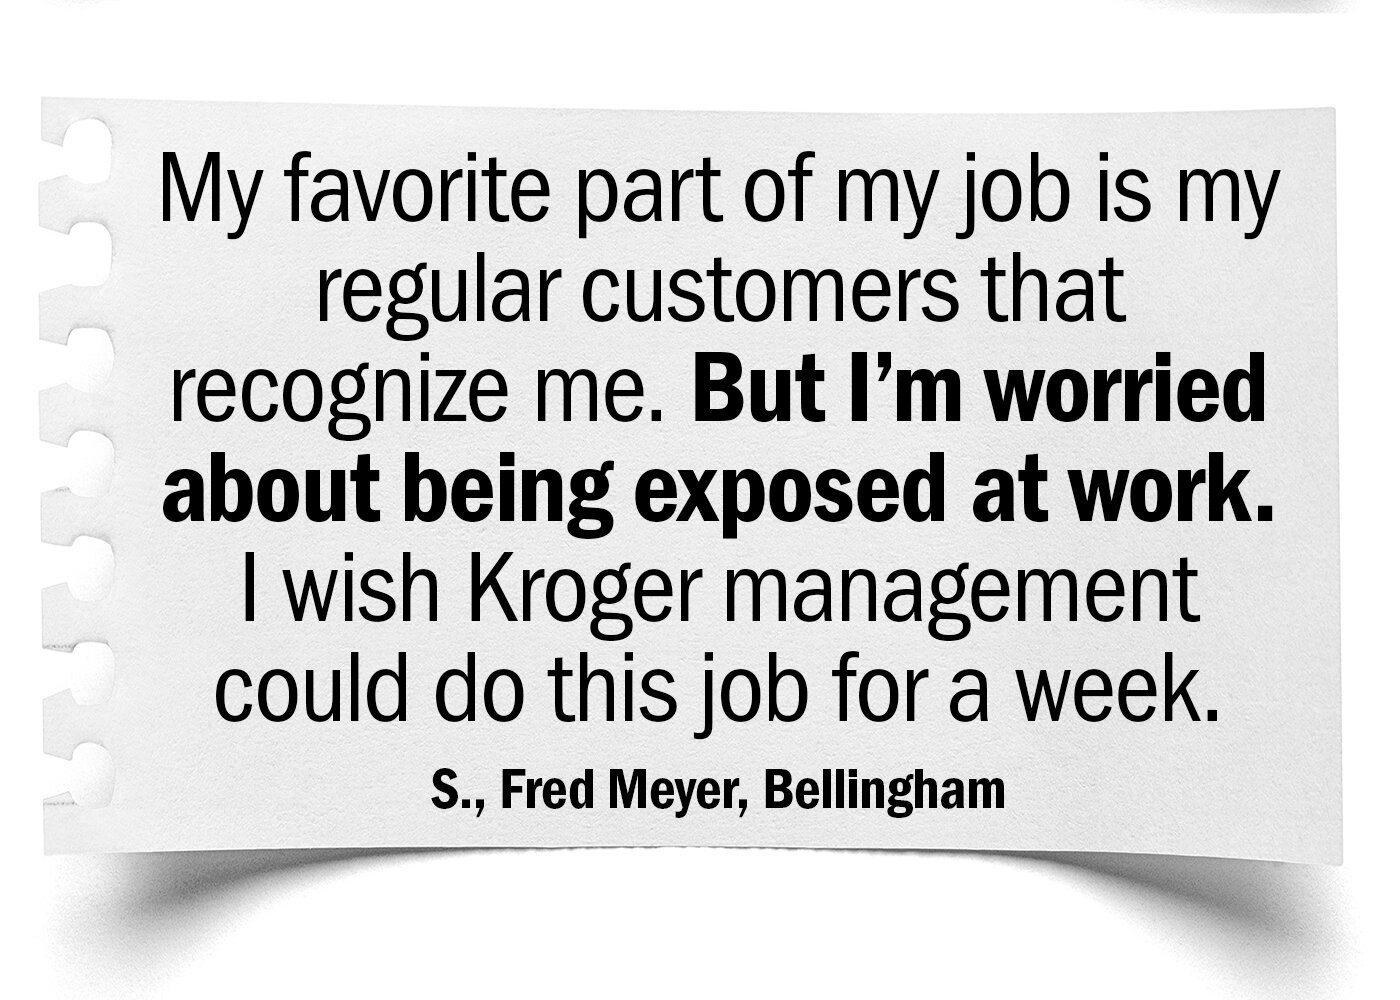 Kroger Stories Slide Show S. Fred Meyer Bellingham.jpg